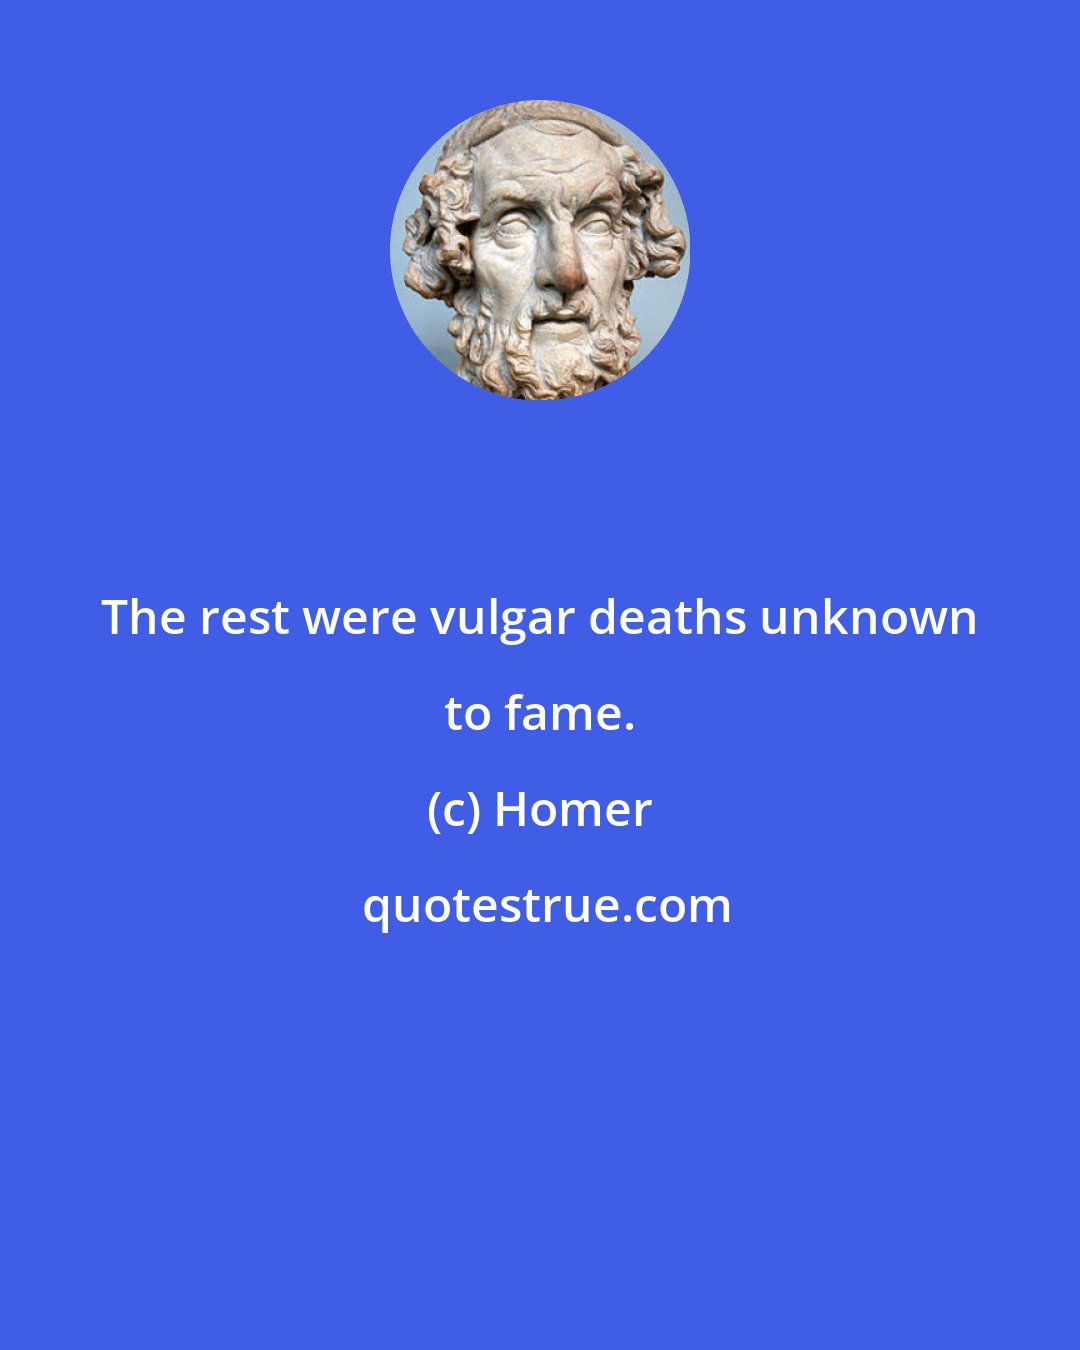 Homer: The rest were vulgar deaths unknown to fame.